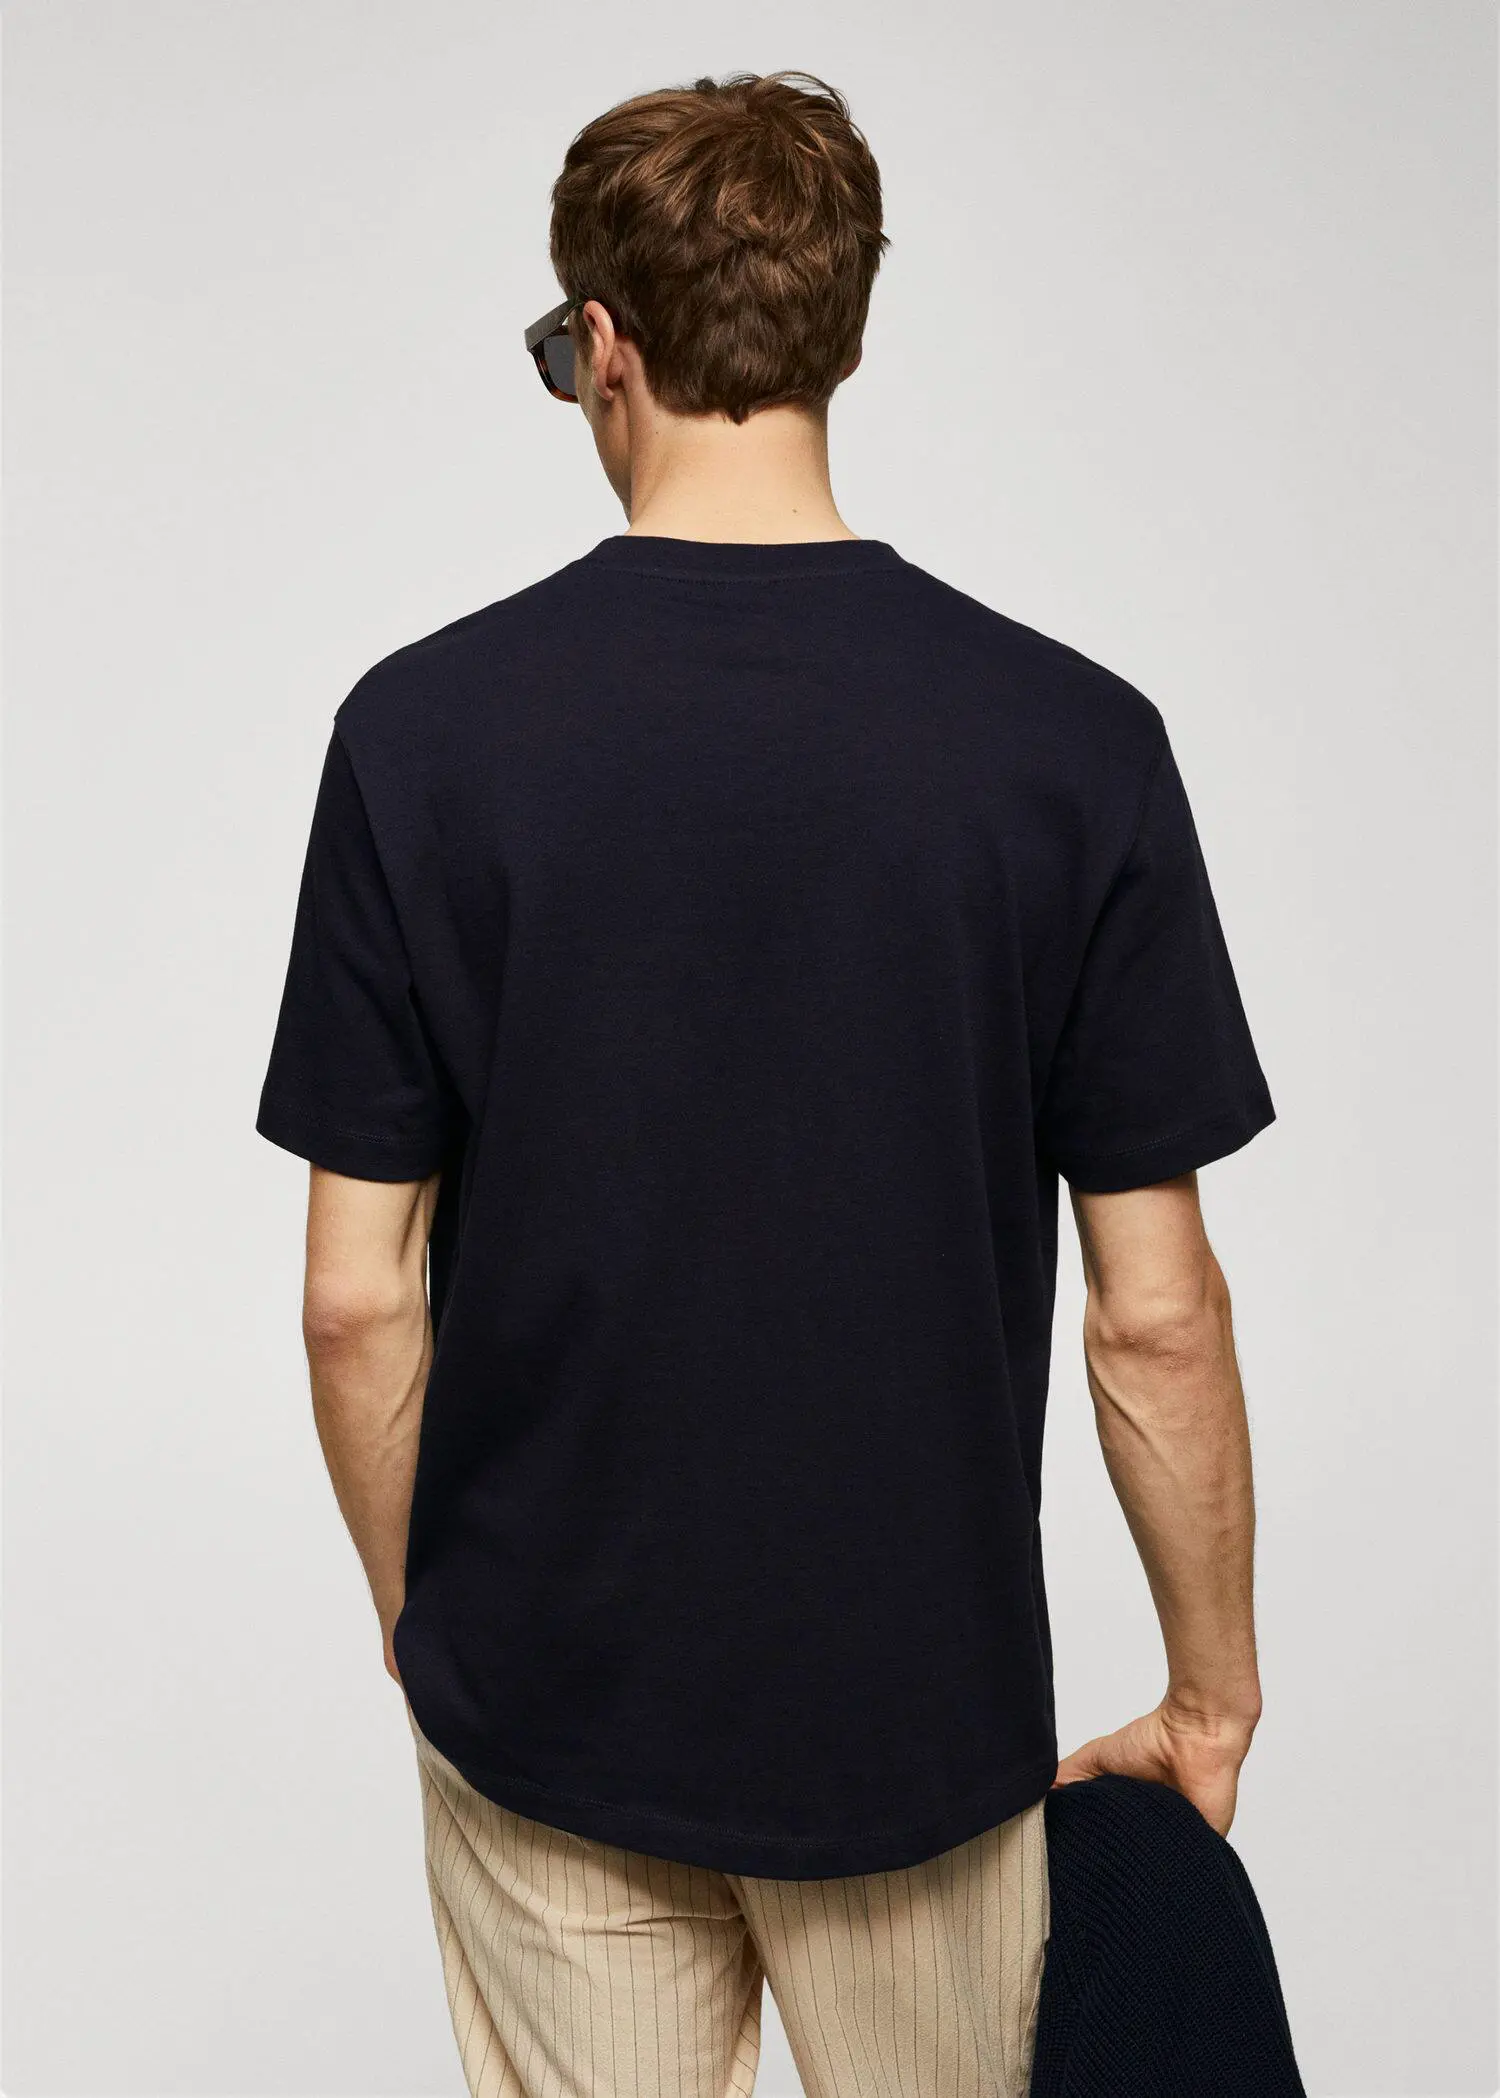 Mango T-shirt básica de 100% algodão relaxed fit. 3